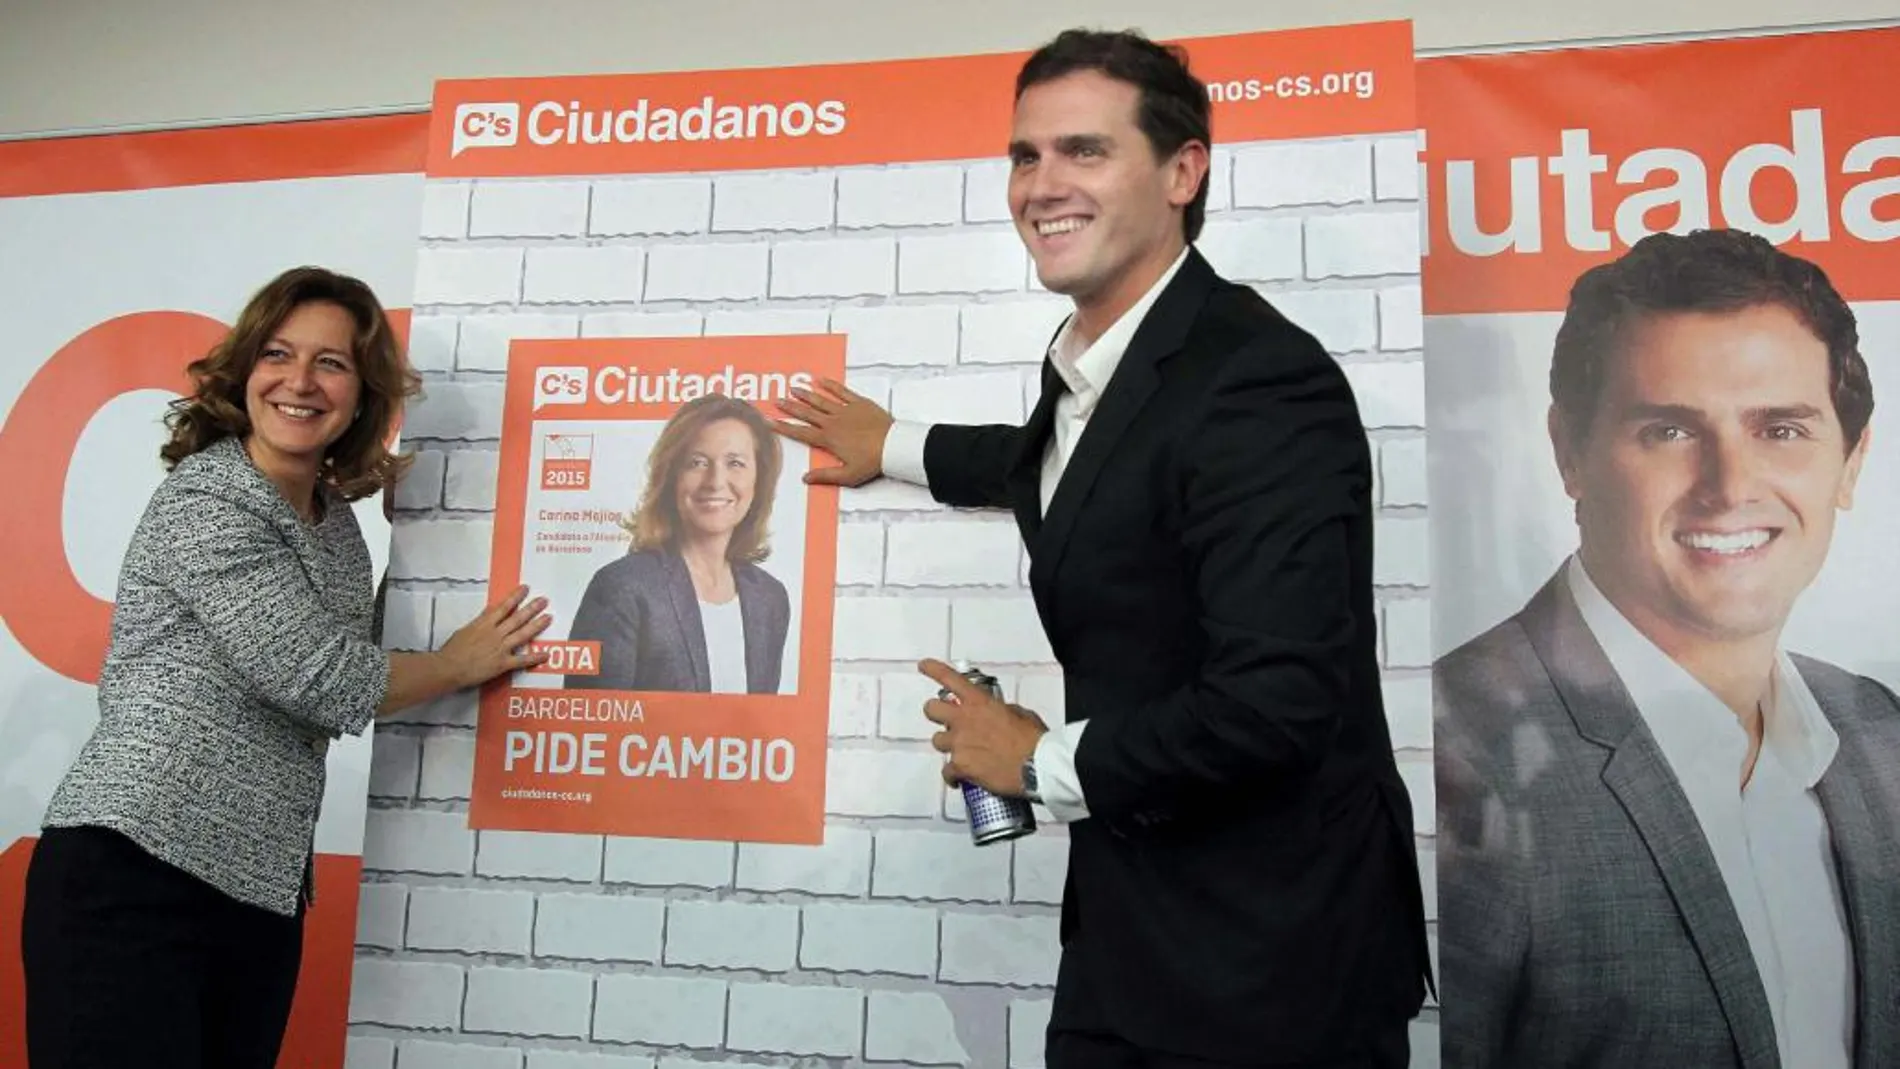 El presidente de Ciudadanos, Albert Rivera, junto con la candidata del partido a la alcaldía de Barcelona, Carina Mejías